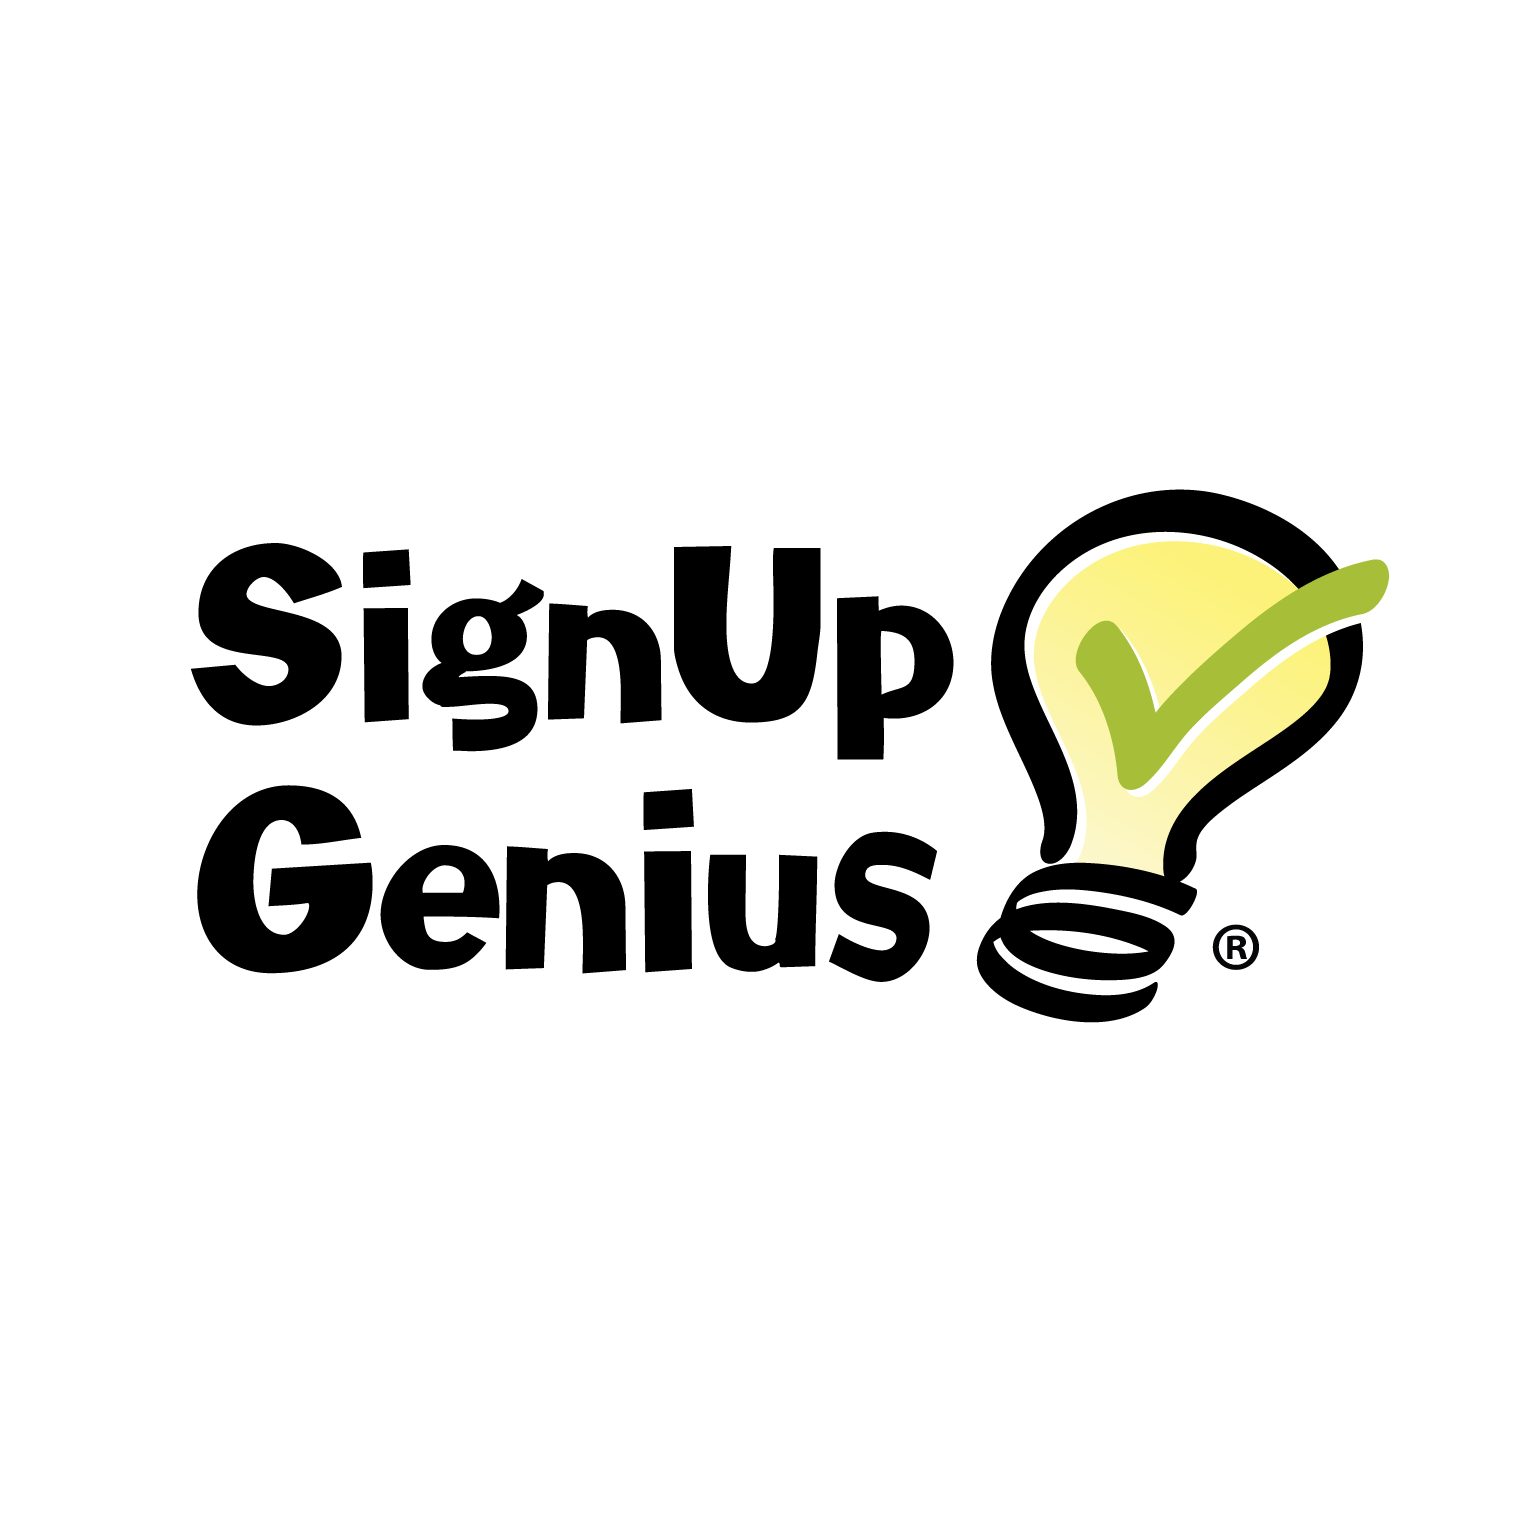 Signup genius logo